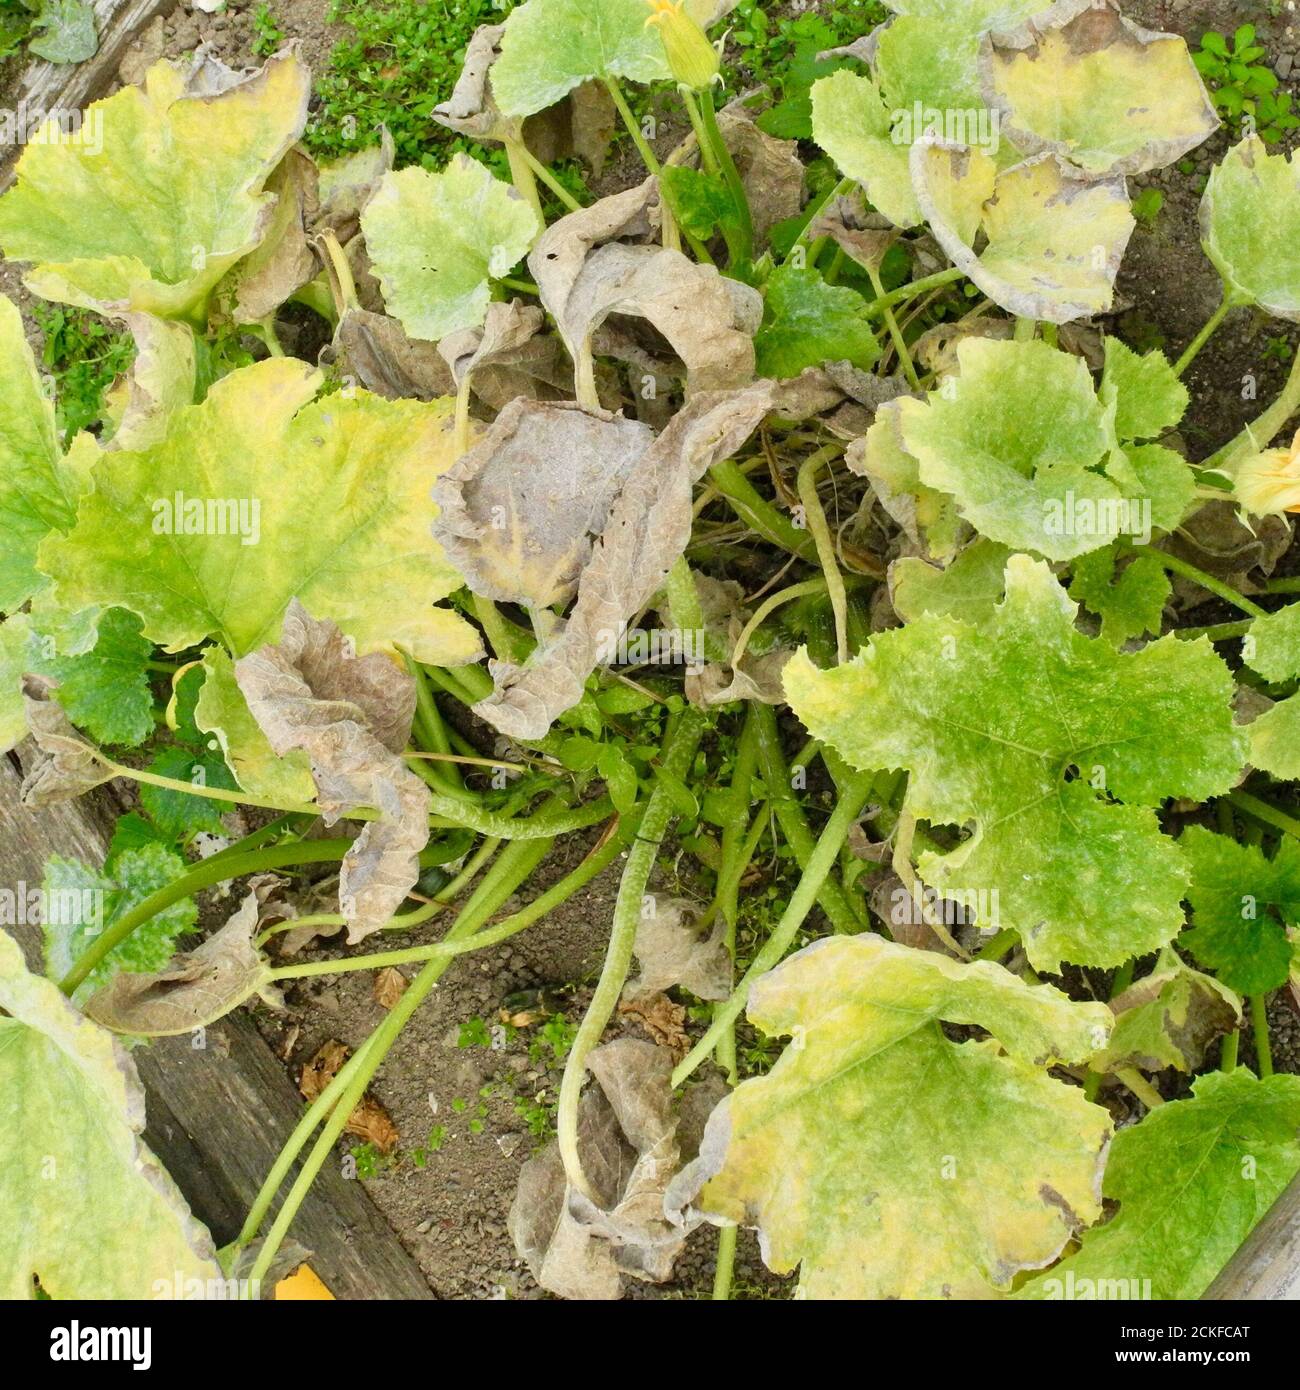 Cette image montre le stade précoce du mildiou poudreux affectant les feuilles d'une PLANTE DE COURGETTE. Le mildiou poudreux est une maladie fongique qui affecte un large éventail de plantes. Les maladies de l'oïdium sont causées par de nombreuses espèces de champignons dans l'ordre des Erysiphales, Podosphaera xanthii étant la cause la plus couramment signalée. Commune sur LES CITROUILLES CONCOMBRES COURGETTES et autres membres de la famille DES COURGES. Banque D'Images